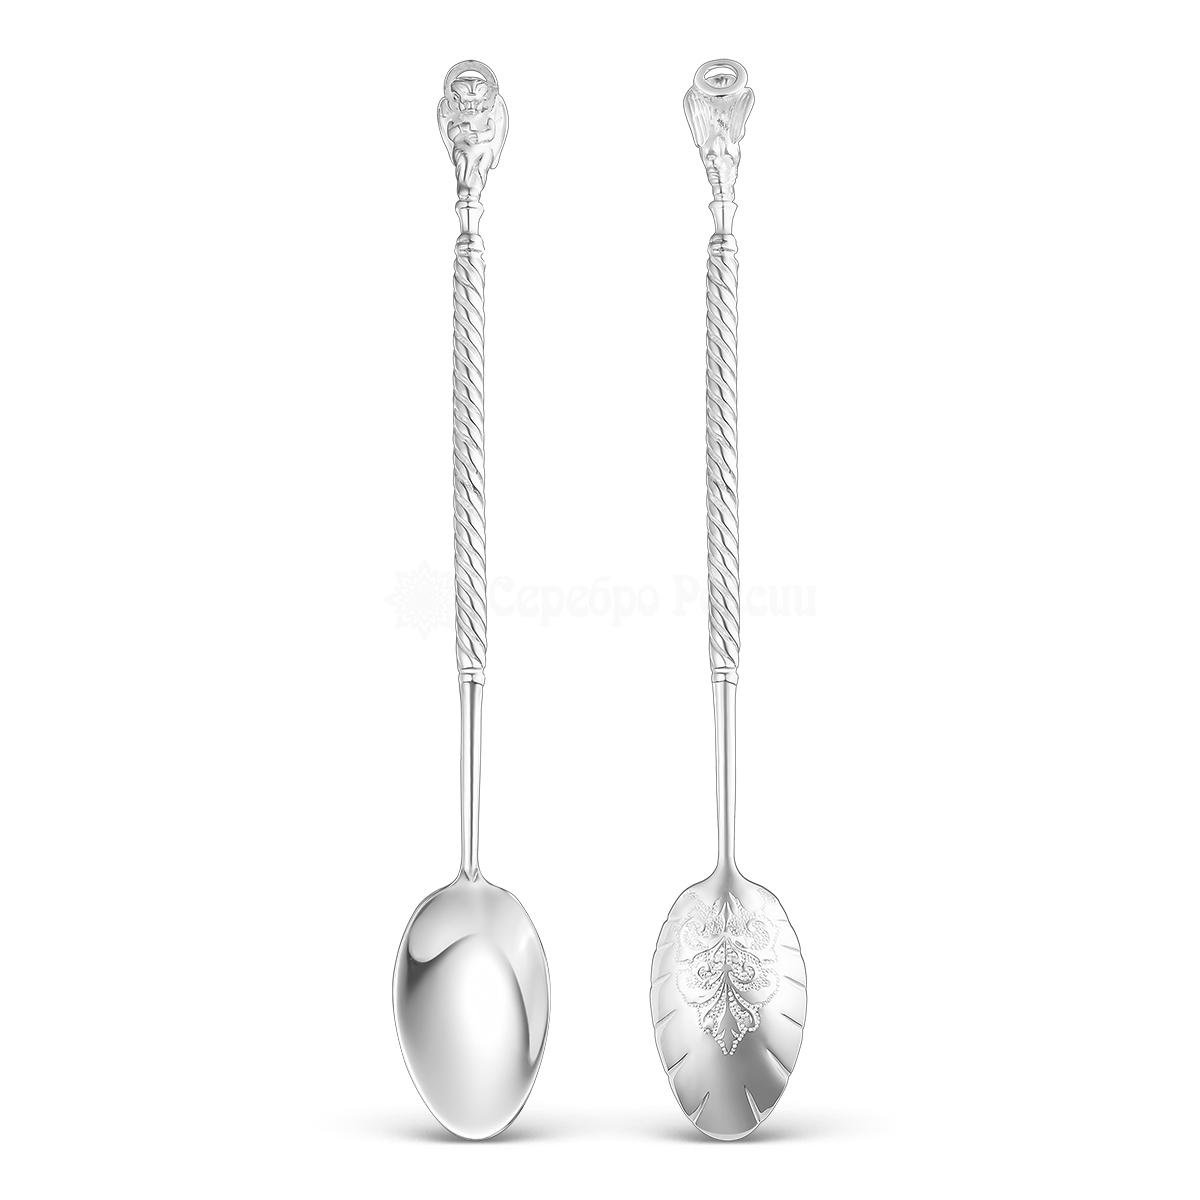 Ложка из серебра(серебрение) - Ангел,12 см 5-005 5-005